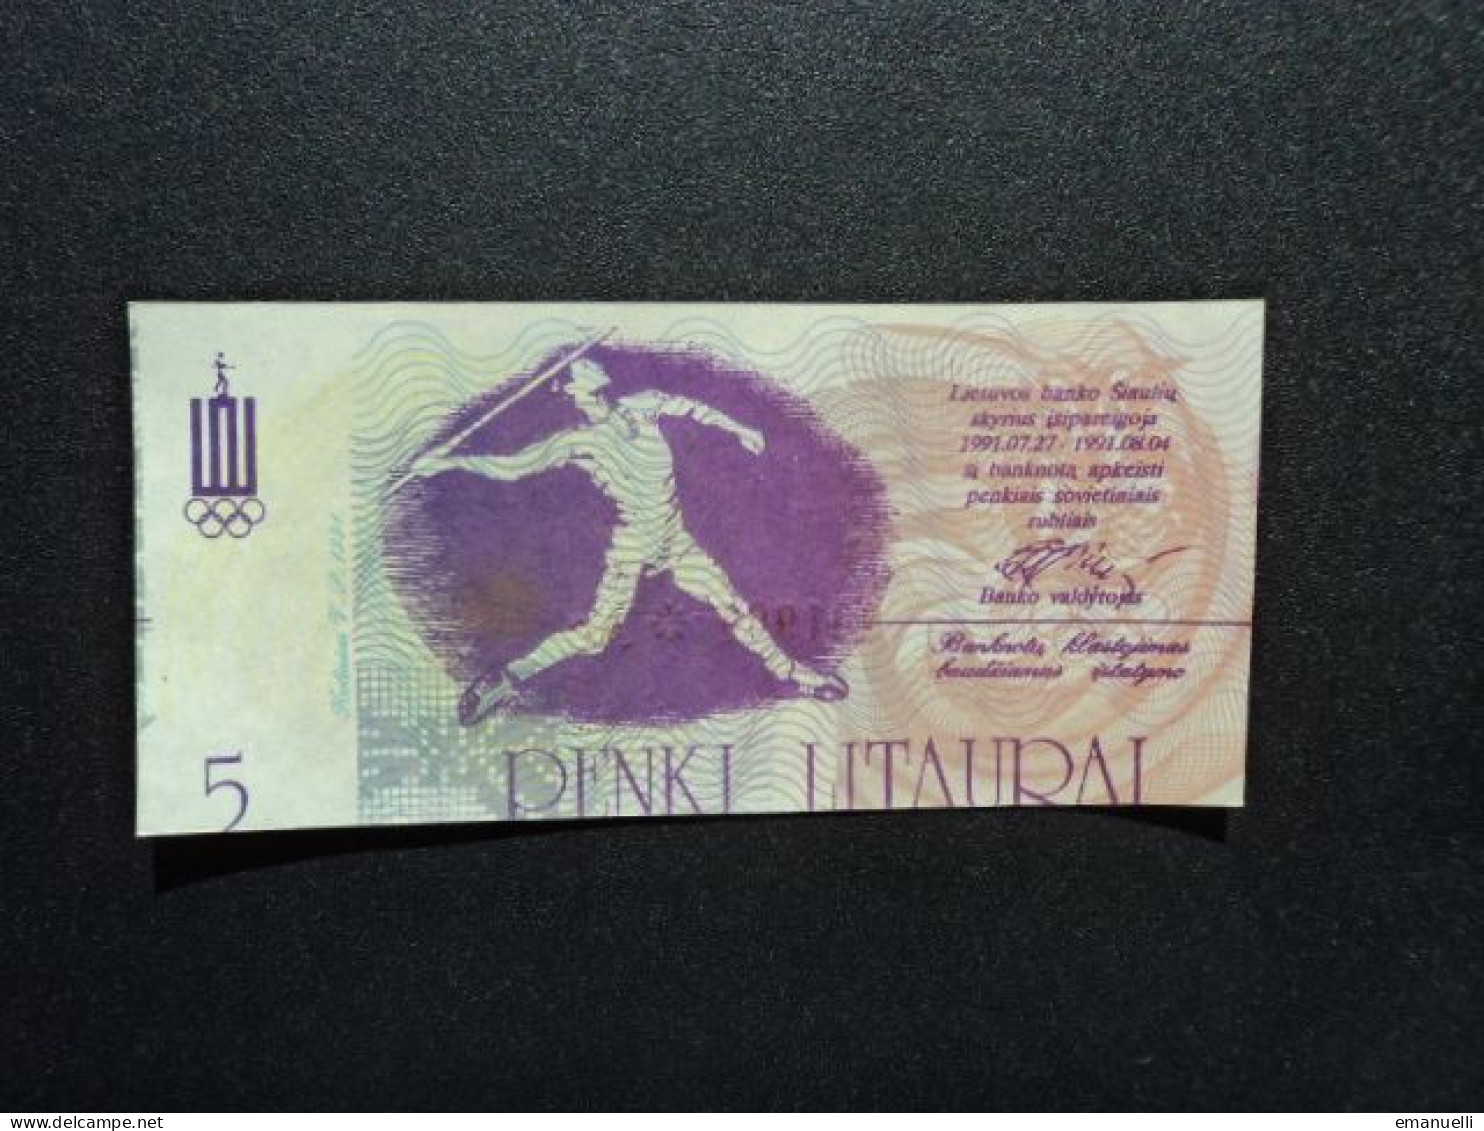 LITHUANIE * : LIETUVOS BANKO SIAULUU SKRYRIAUS BANKNOTAS : 5 LITAURAL   27-4-1991   SPL - Litouwen